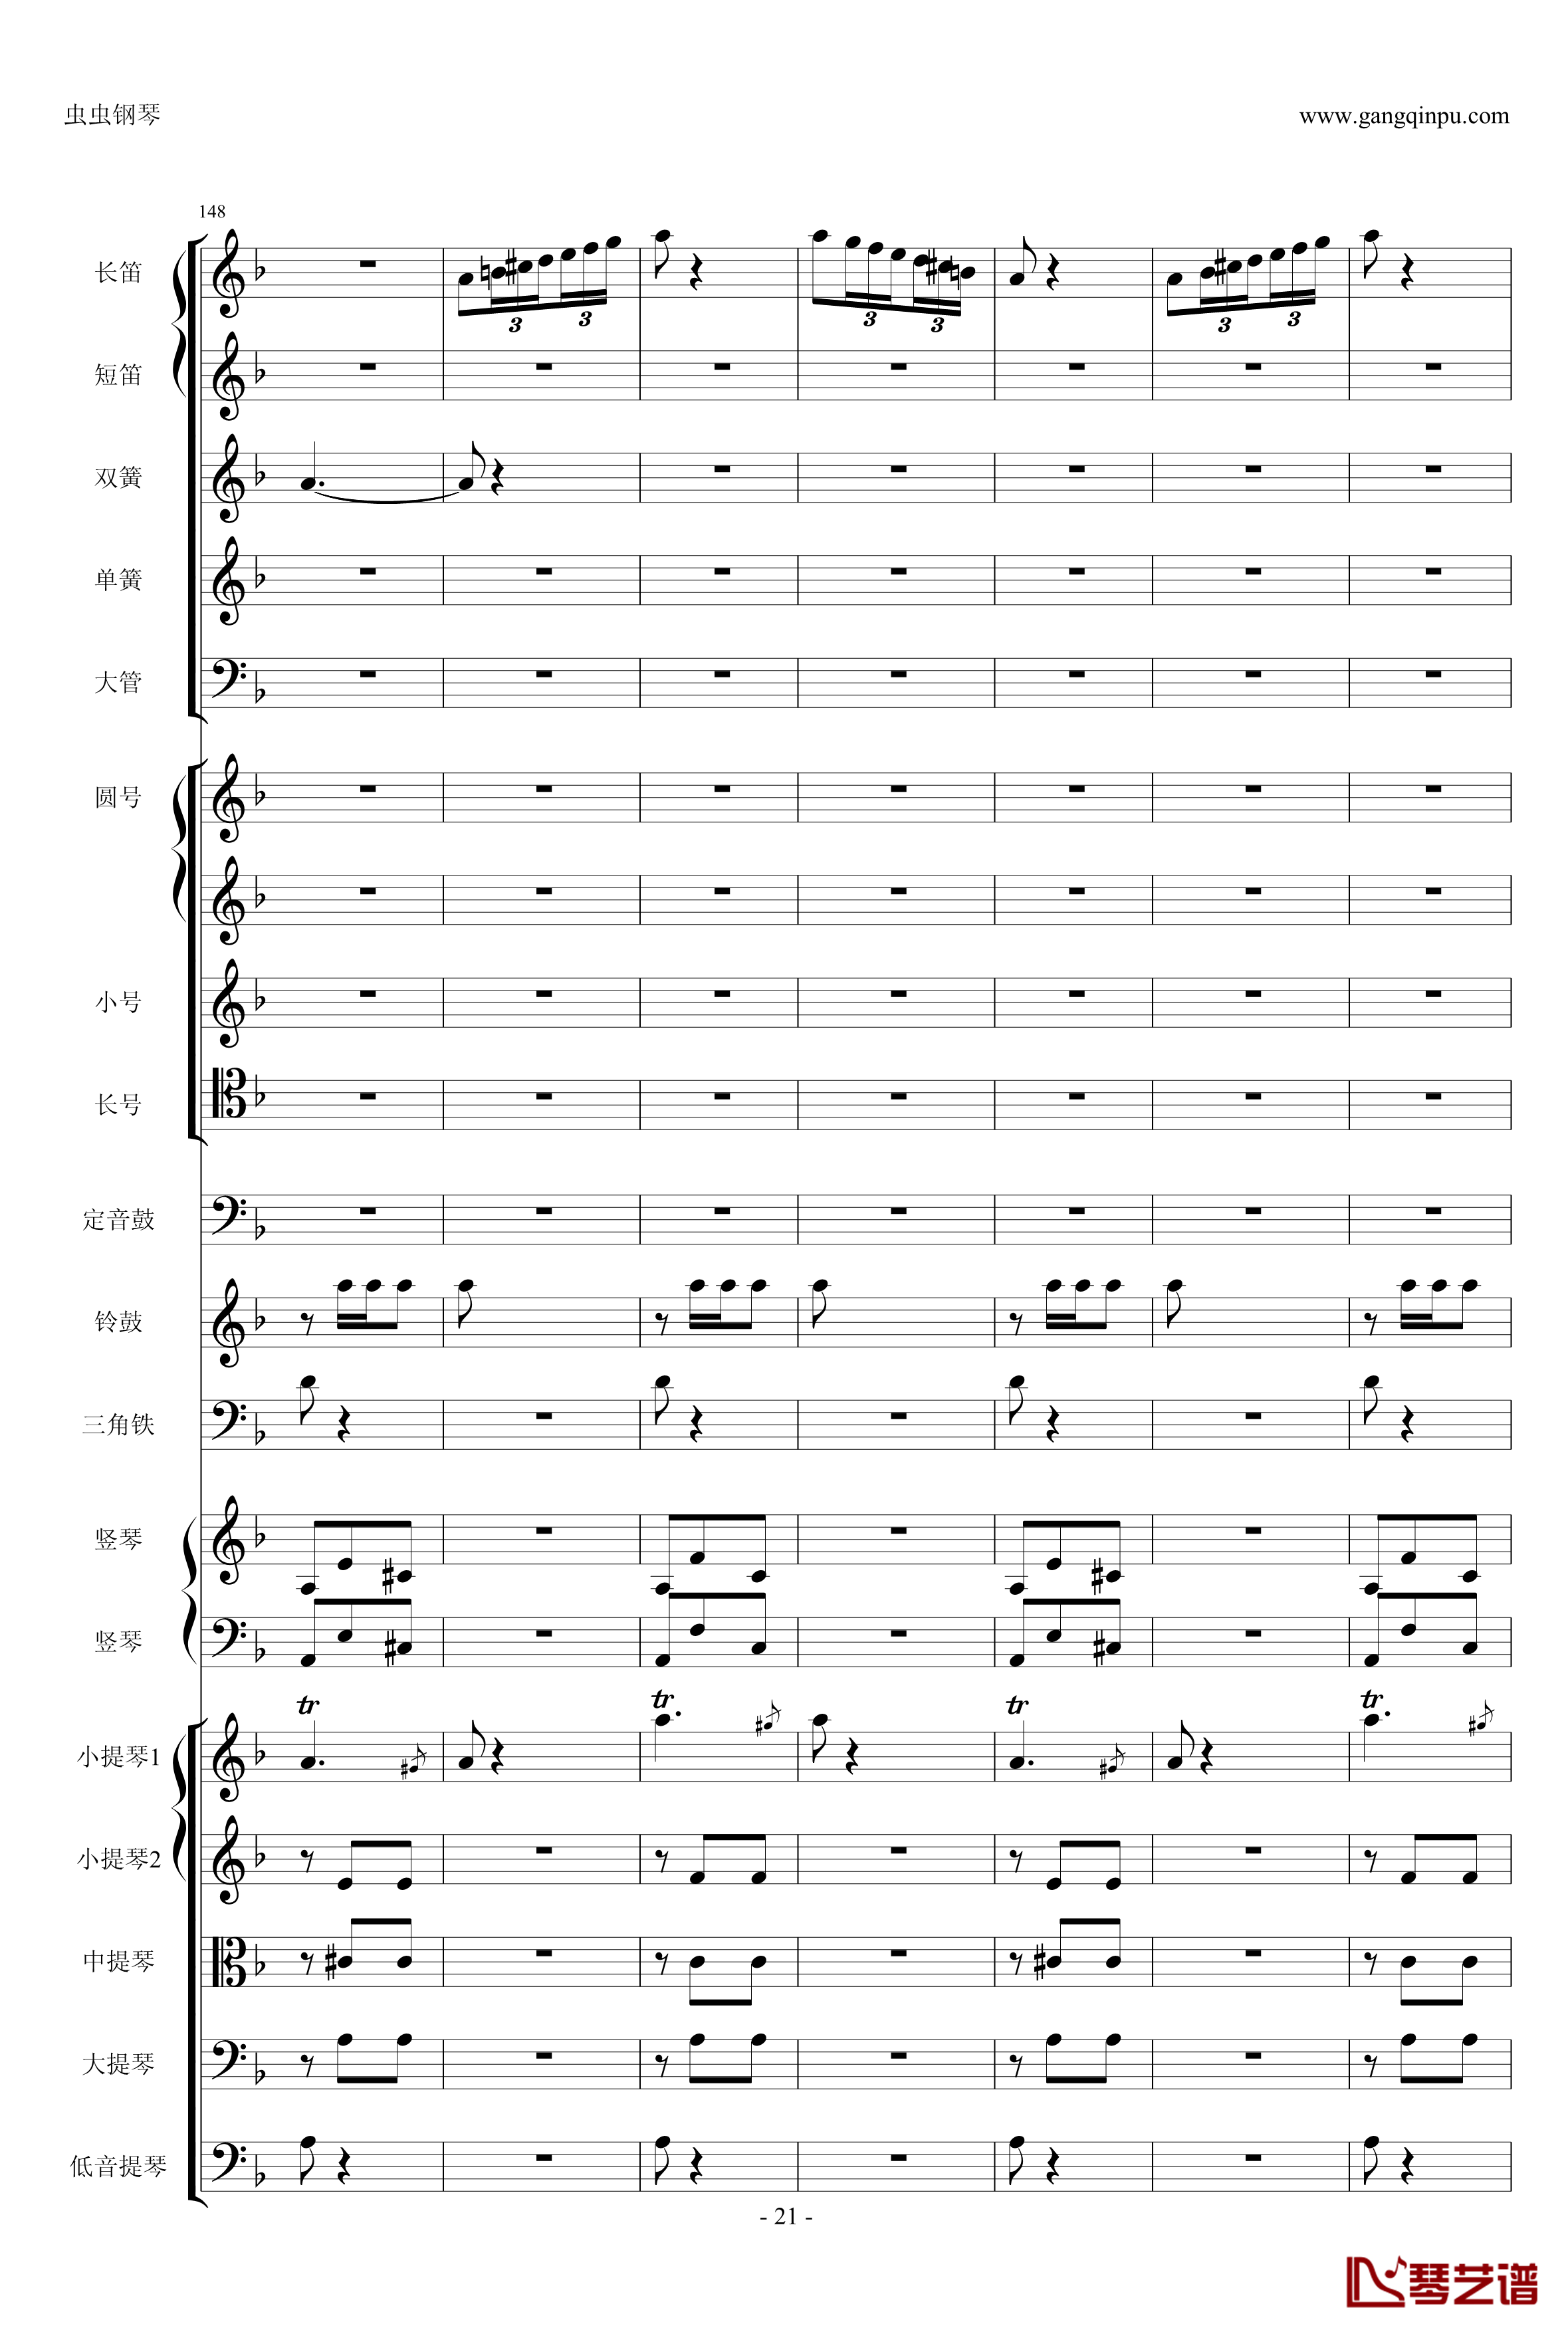 歌剧卡门选段钢琴谱-比才-Bizet- 第四幕间奏曲21